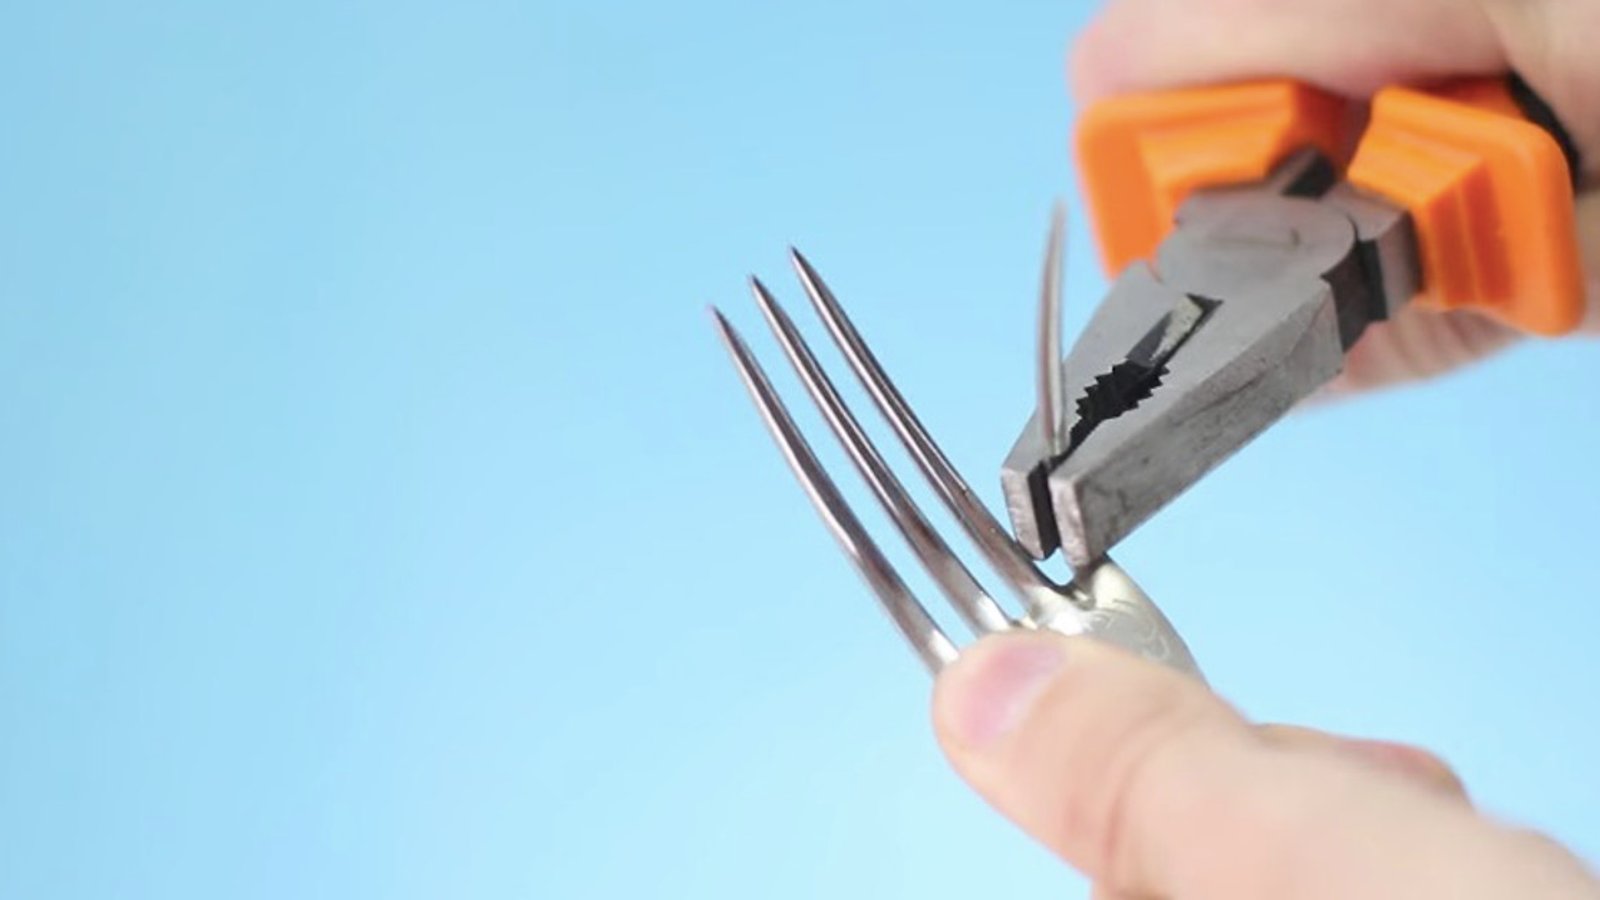 Avec une paire de pince, crochissez les dents d'une fourchette afin de réaliser l'une de ces 6 brillantes idées! 